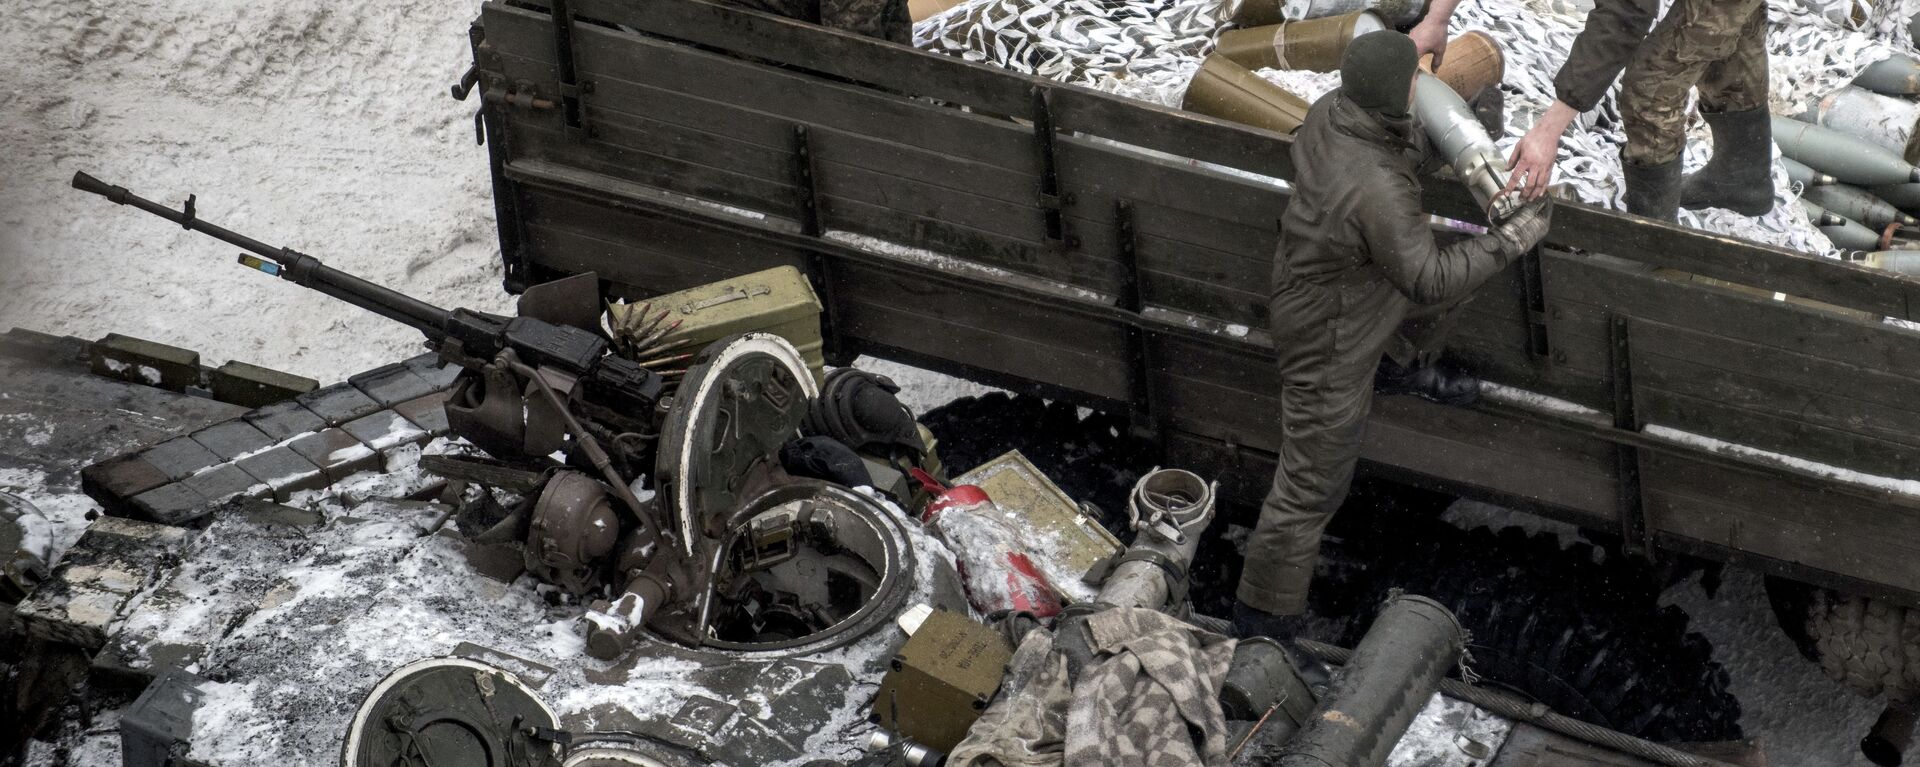 Militares ucranianos carregam munições de guerra no tanque em Avdeevka. Ucrânia, 2 de fevereiro de 2017 - Sputnik Brasil, 1920, 15.02.2024